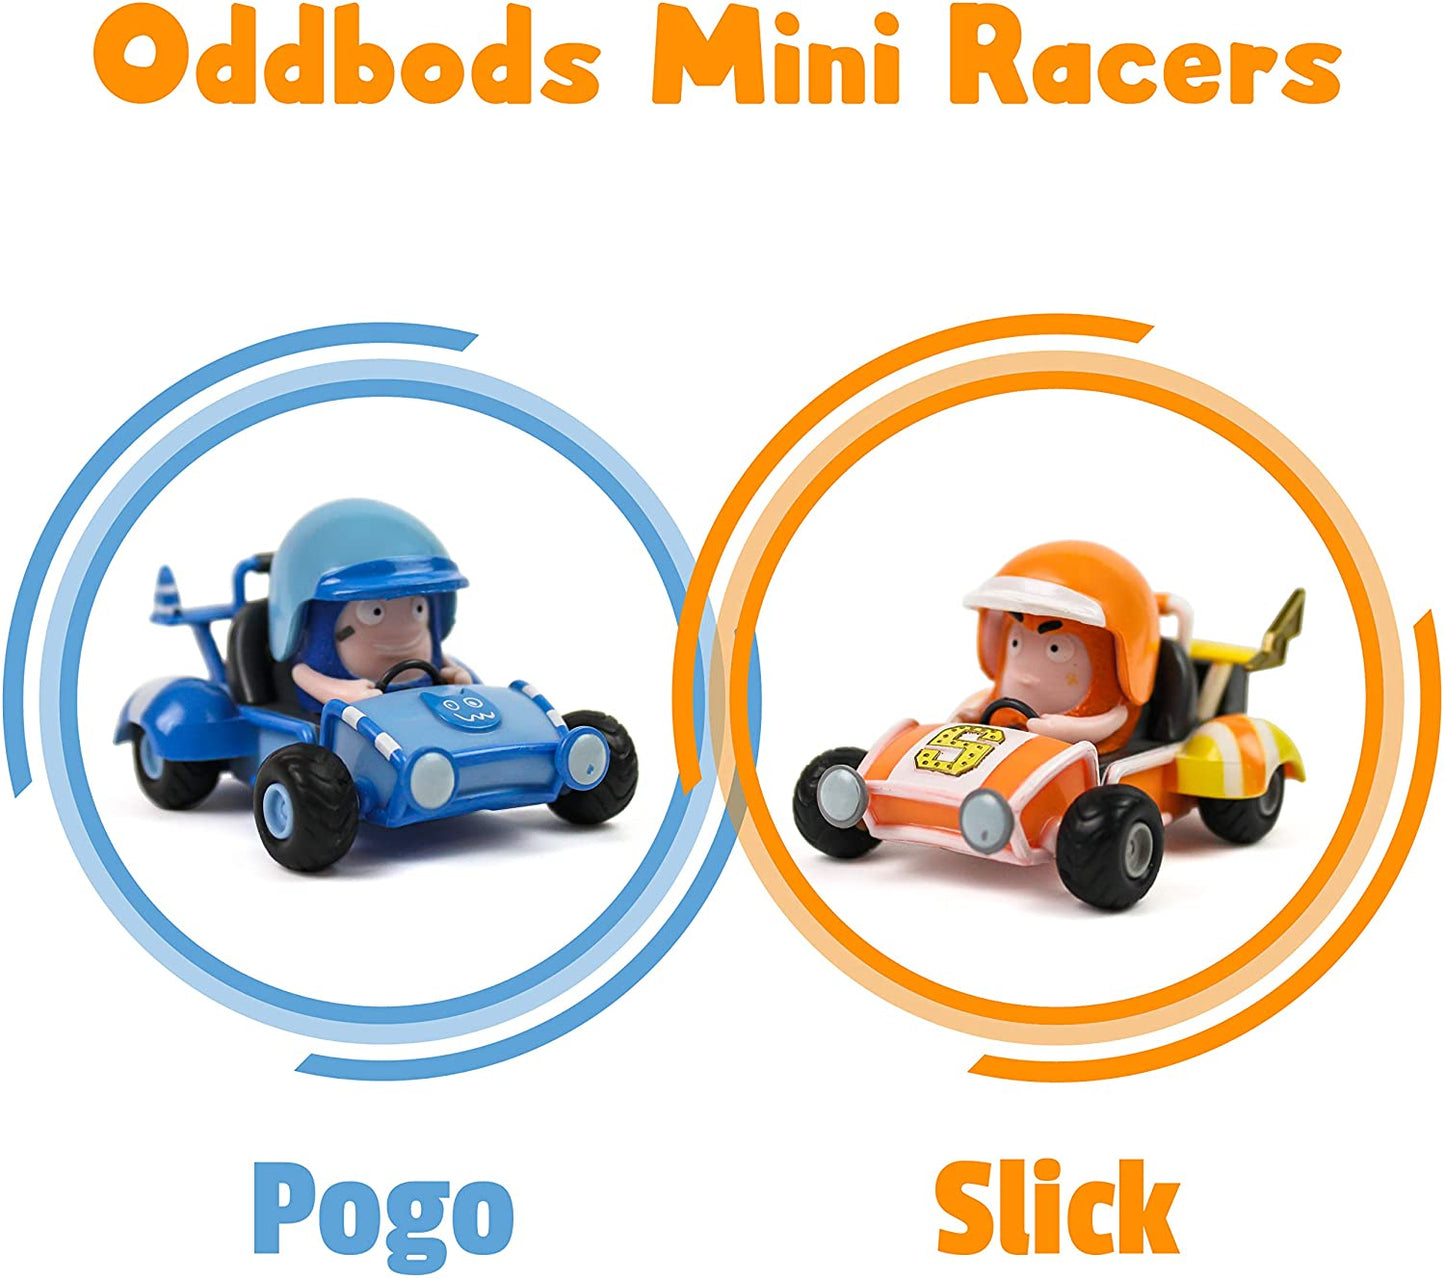 ODDBODS Mini Racers Pogo & Slick